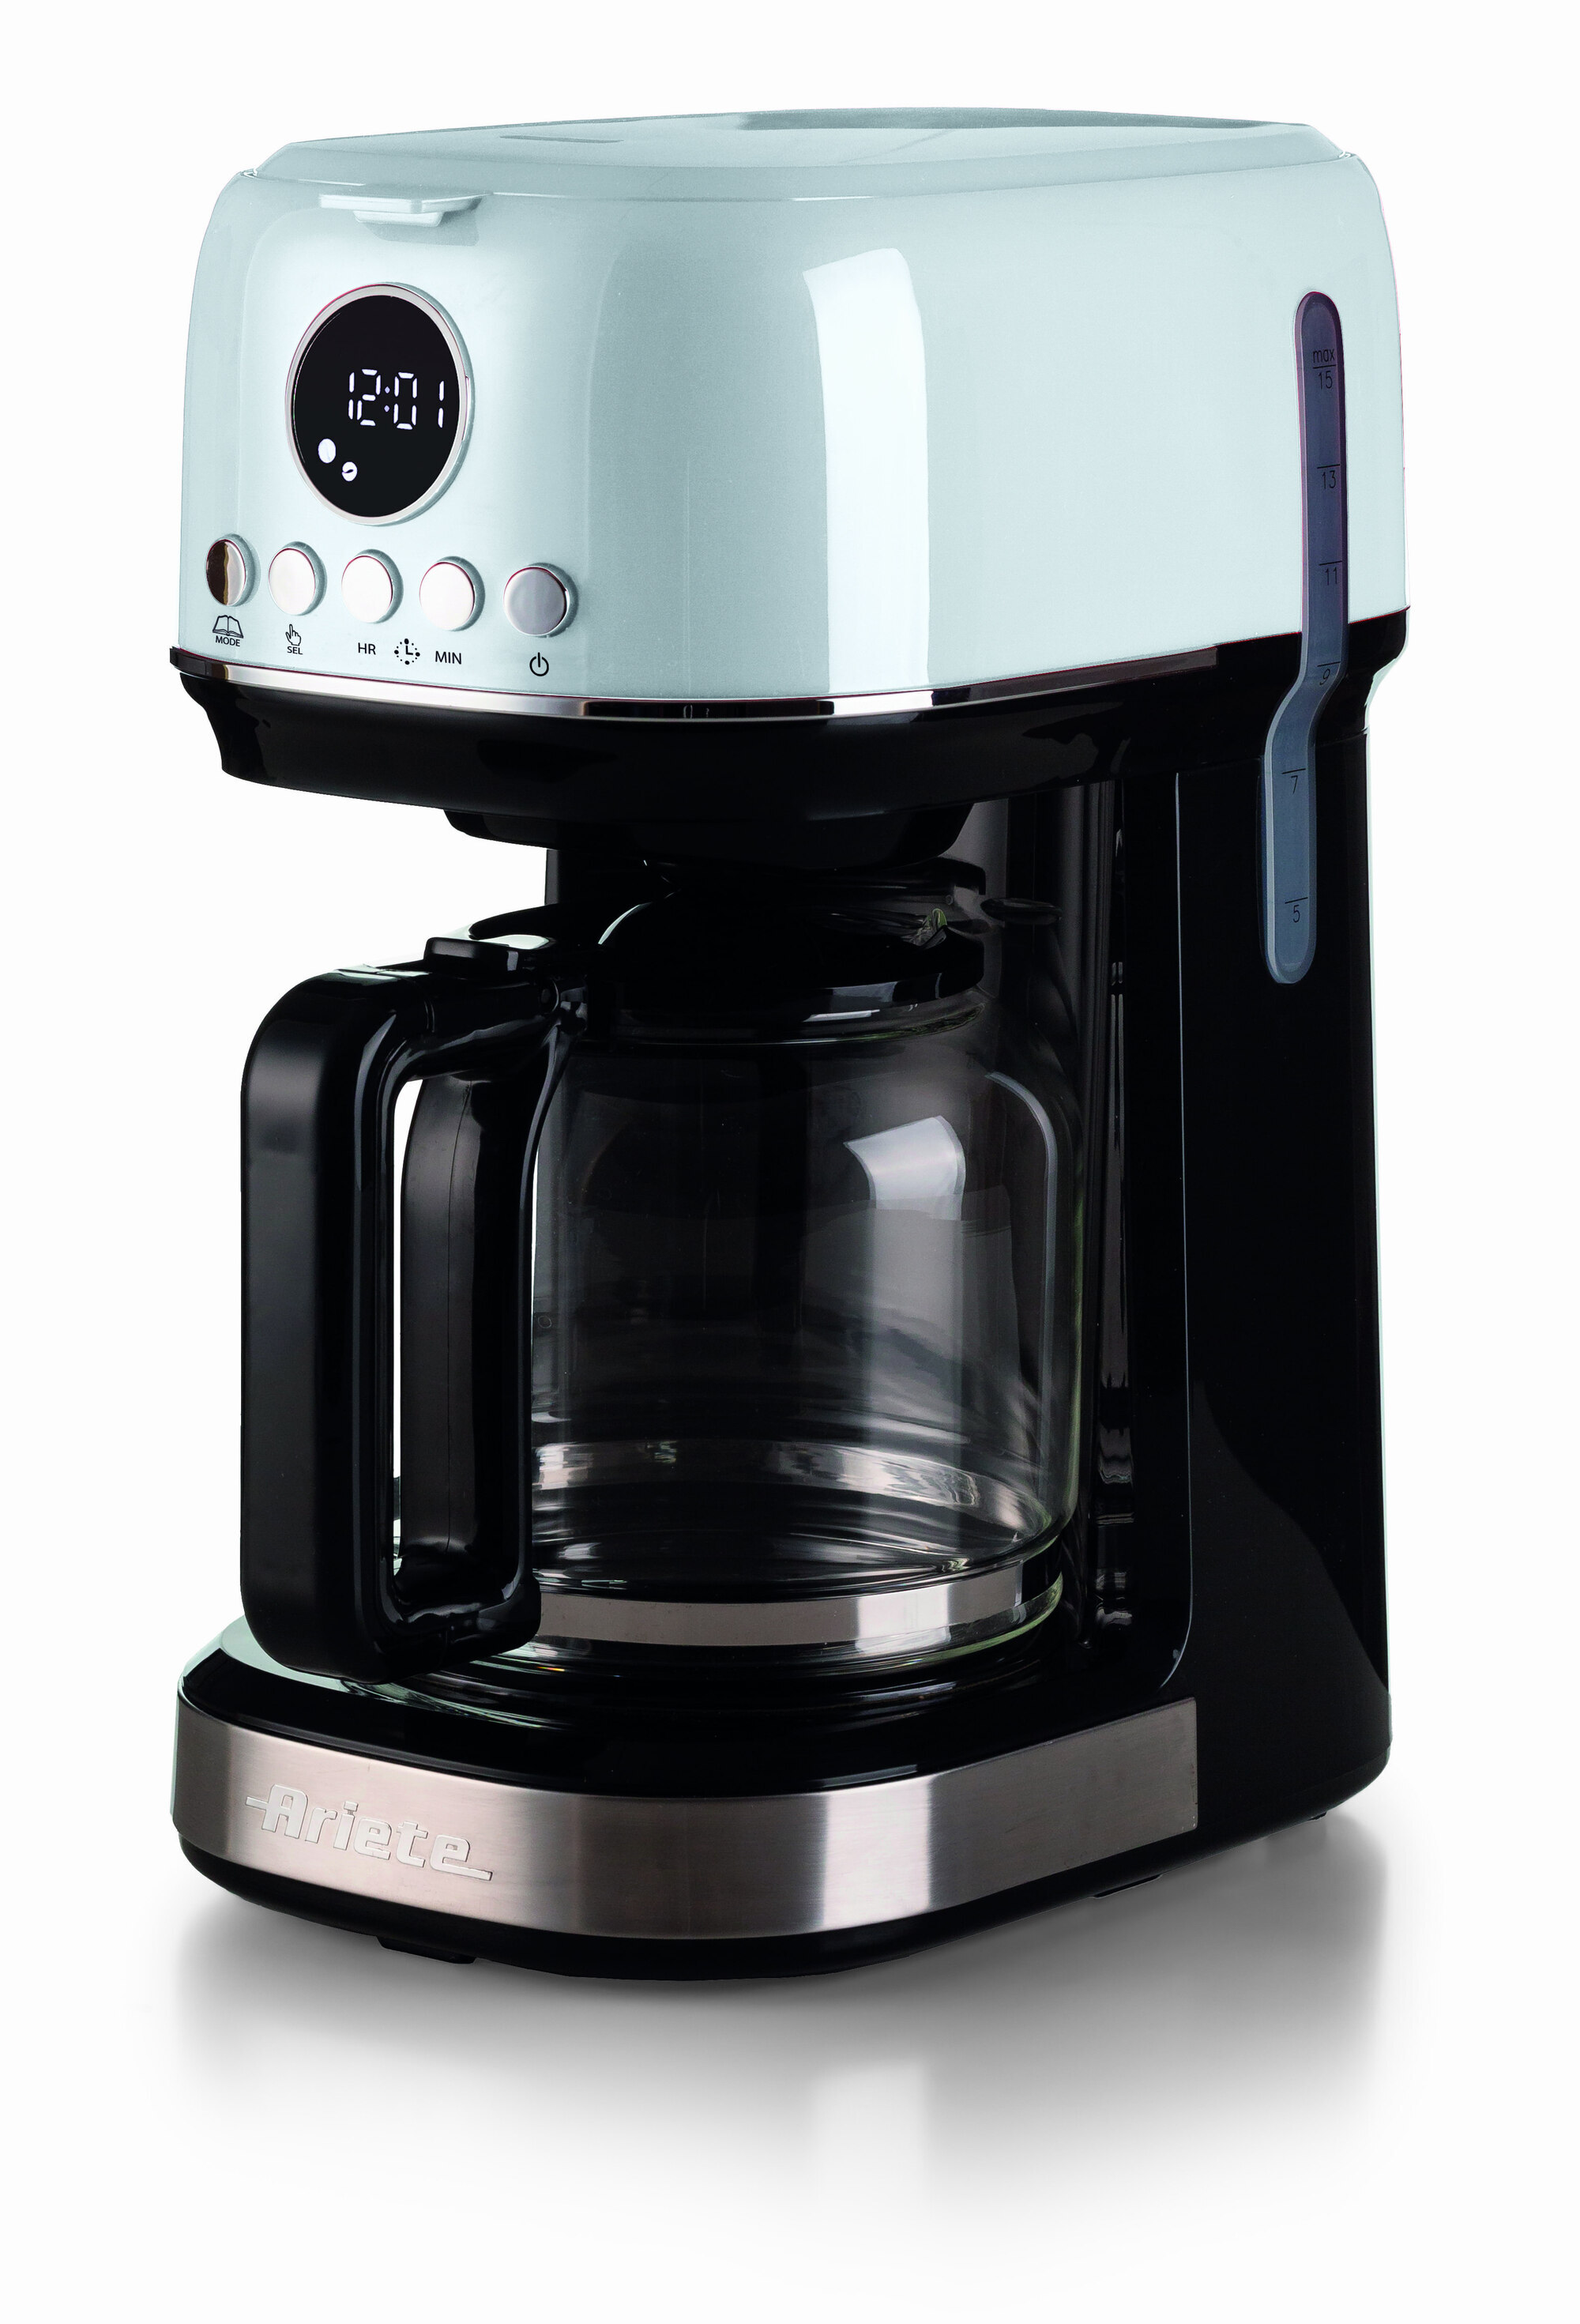 Image of Ariete 1396 Macchina da caffè con filtro Moderna, Caffè americano, Capacità fino a 15 tazze, Base riscaldante, Display LCD, Filtri estraibili e lavabili, Bianco